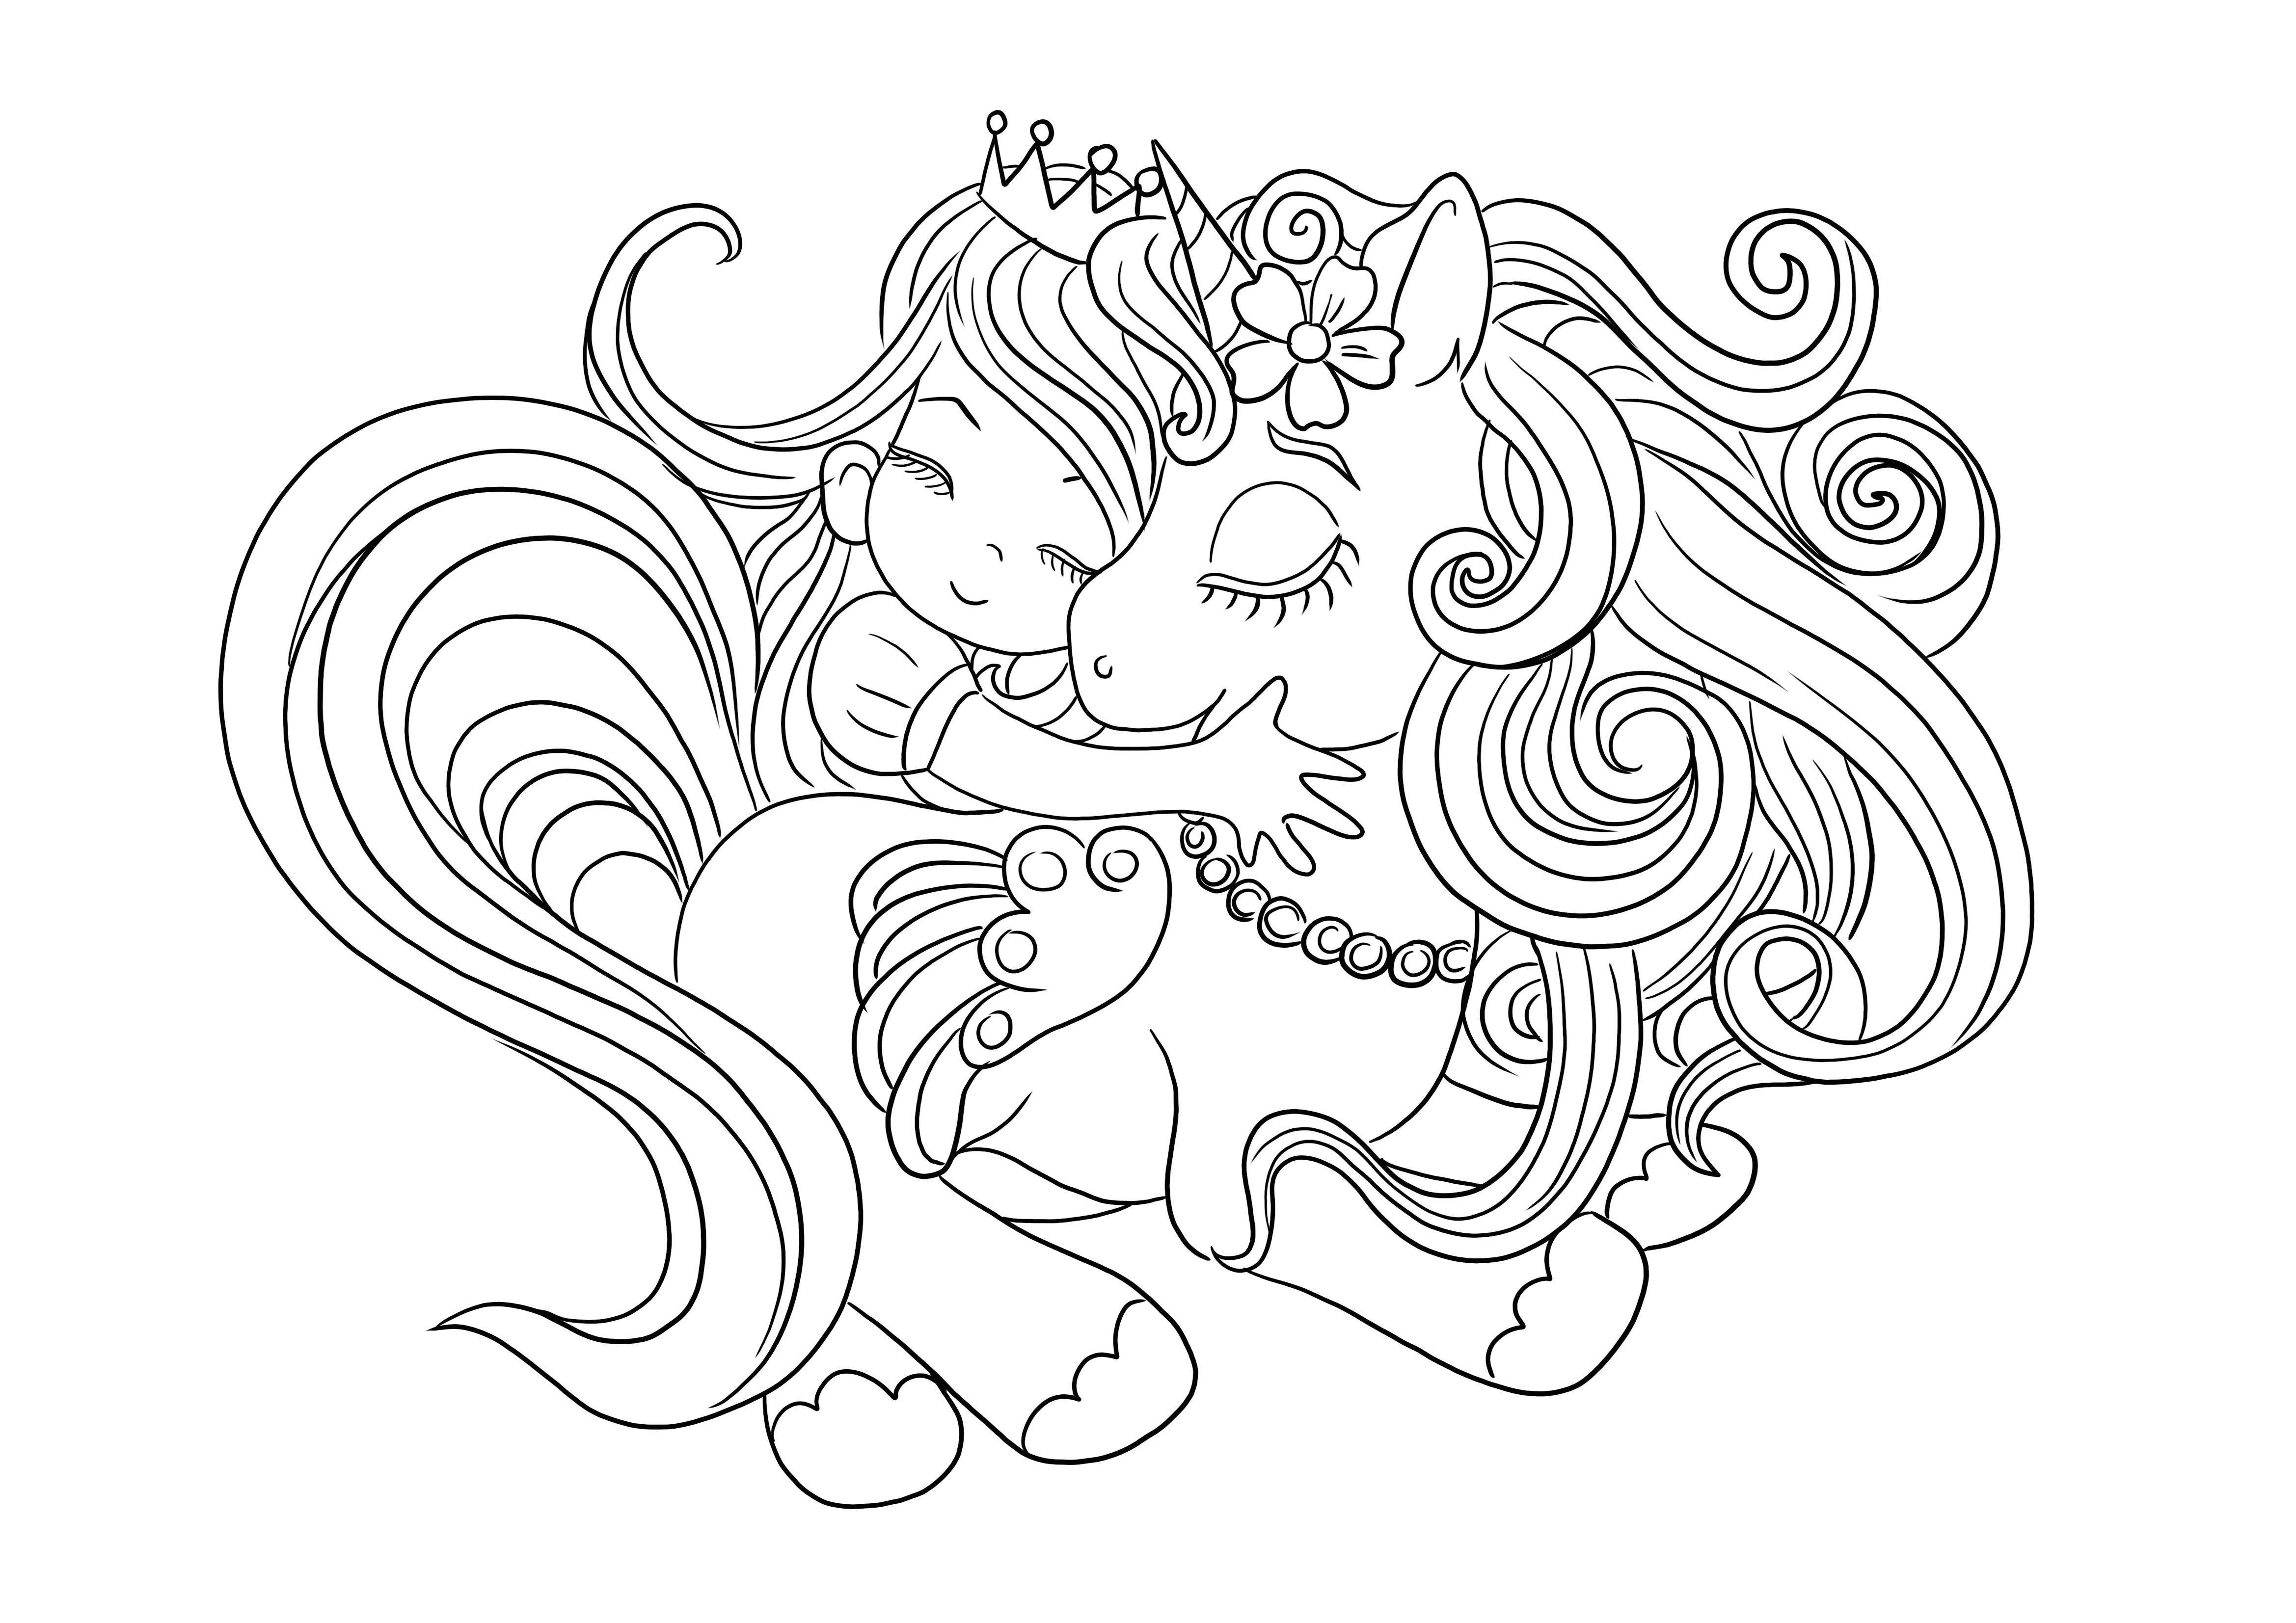 Abbracci di unicorno e ragazza da stampare e colorare gratuitamente per i bambini